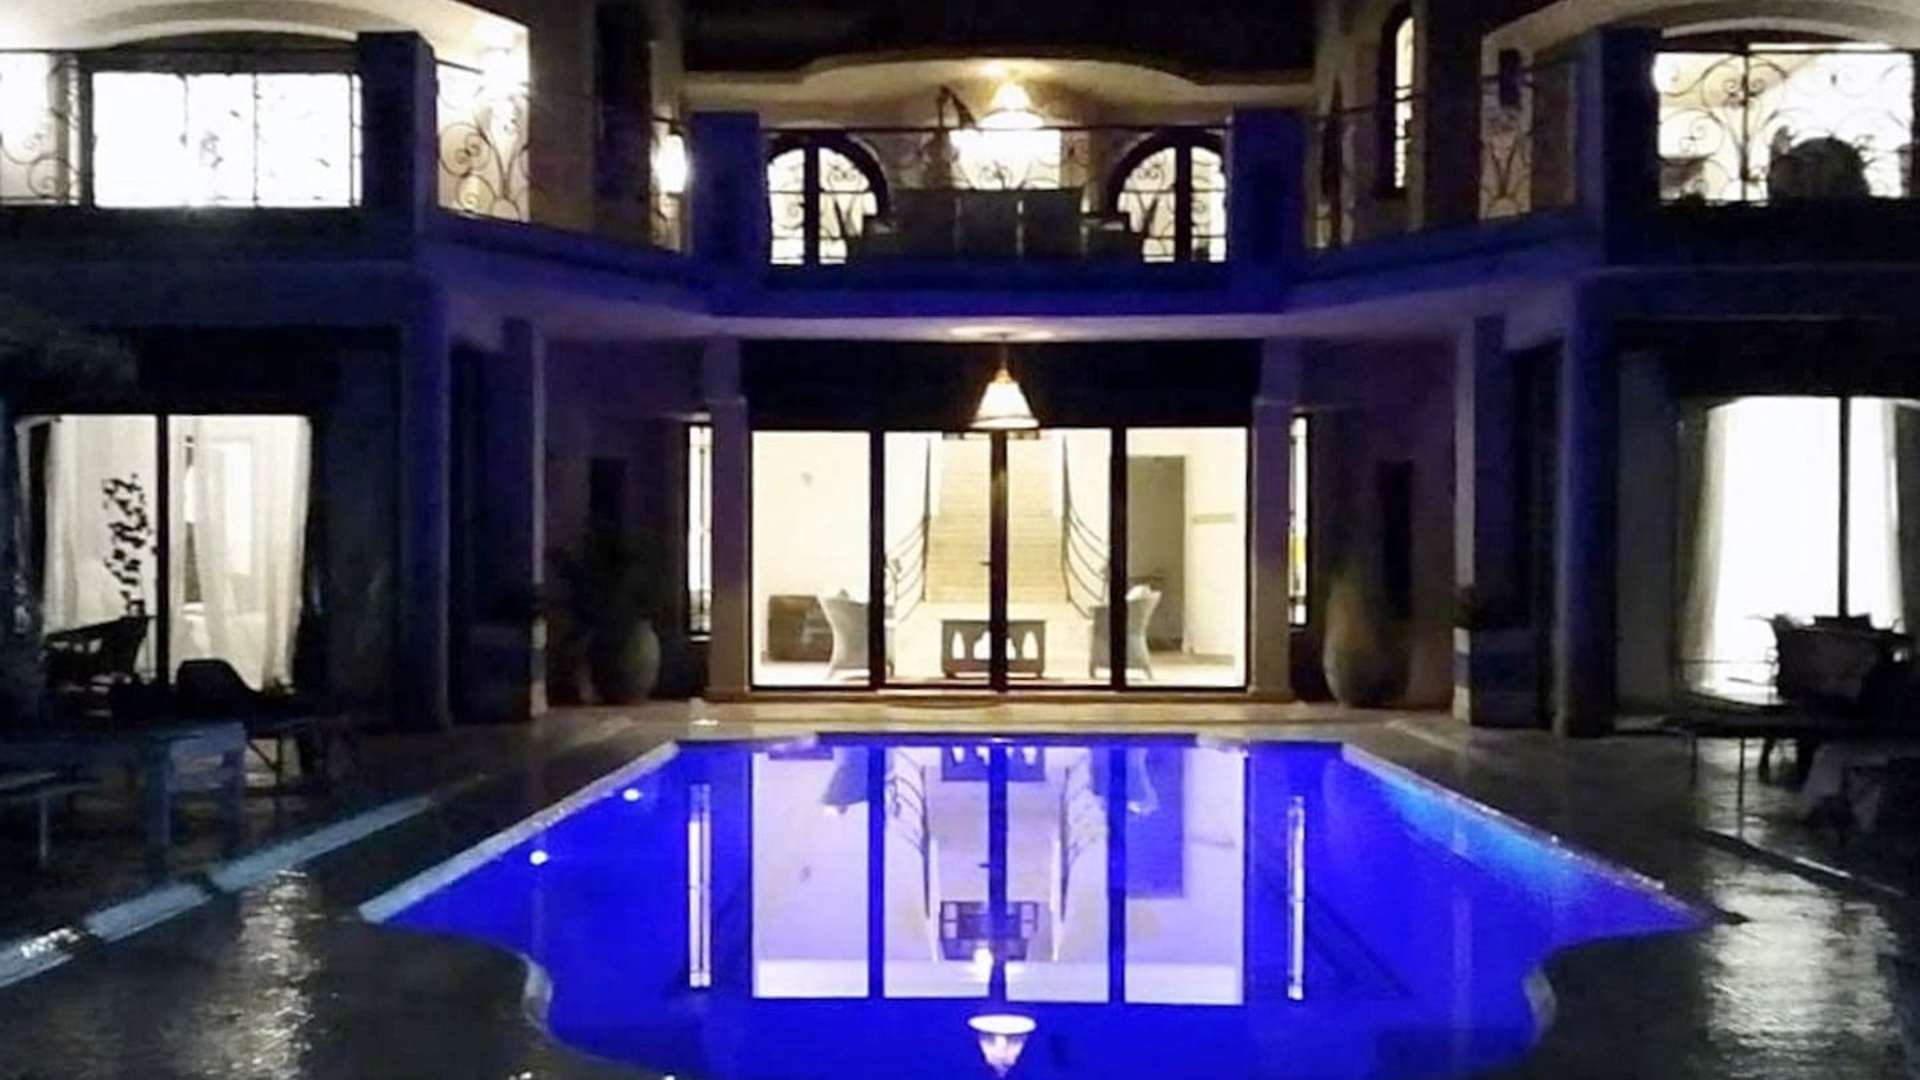 Location de vacances,Villa,Magnifique villa 6 chambres en première ligne sur le golf d'Amelkis à Marrakech,Marrakech,Amelkis Golf Resort